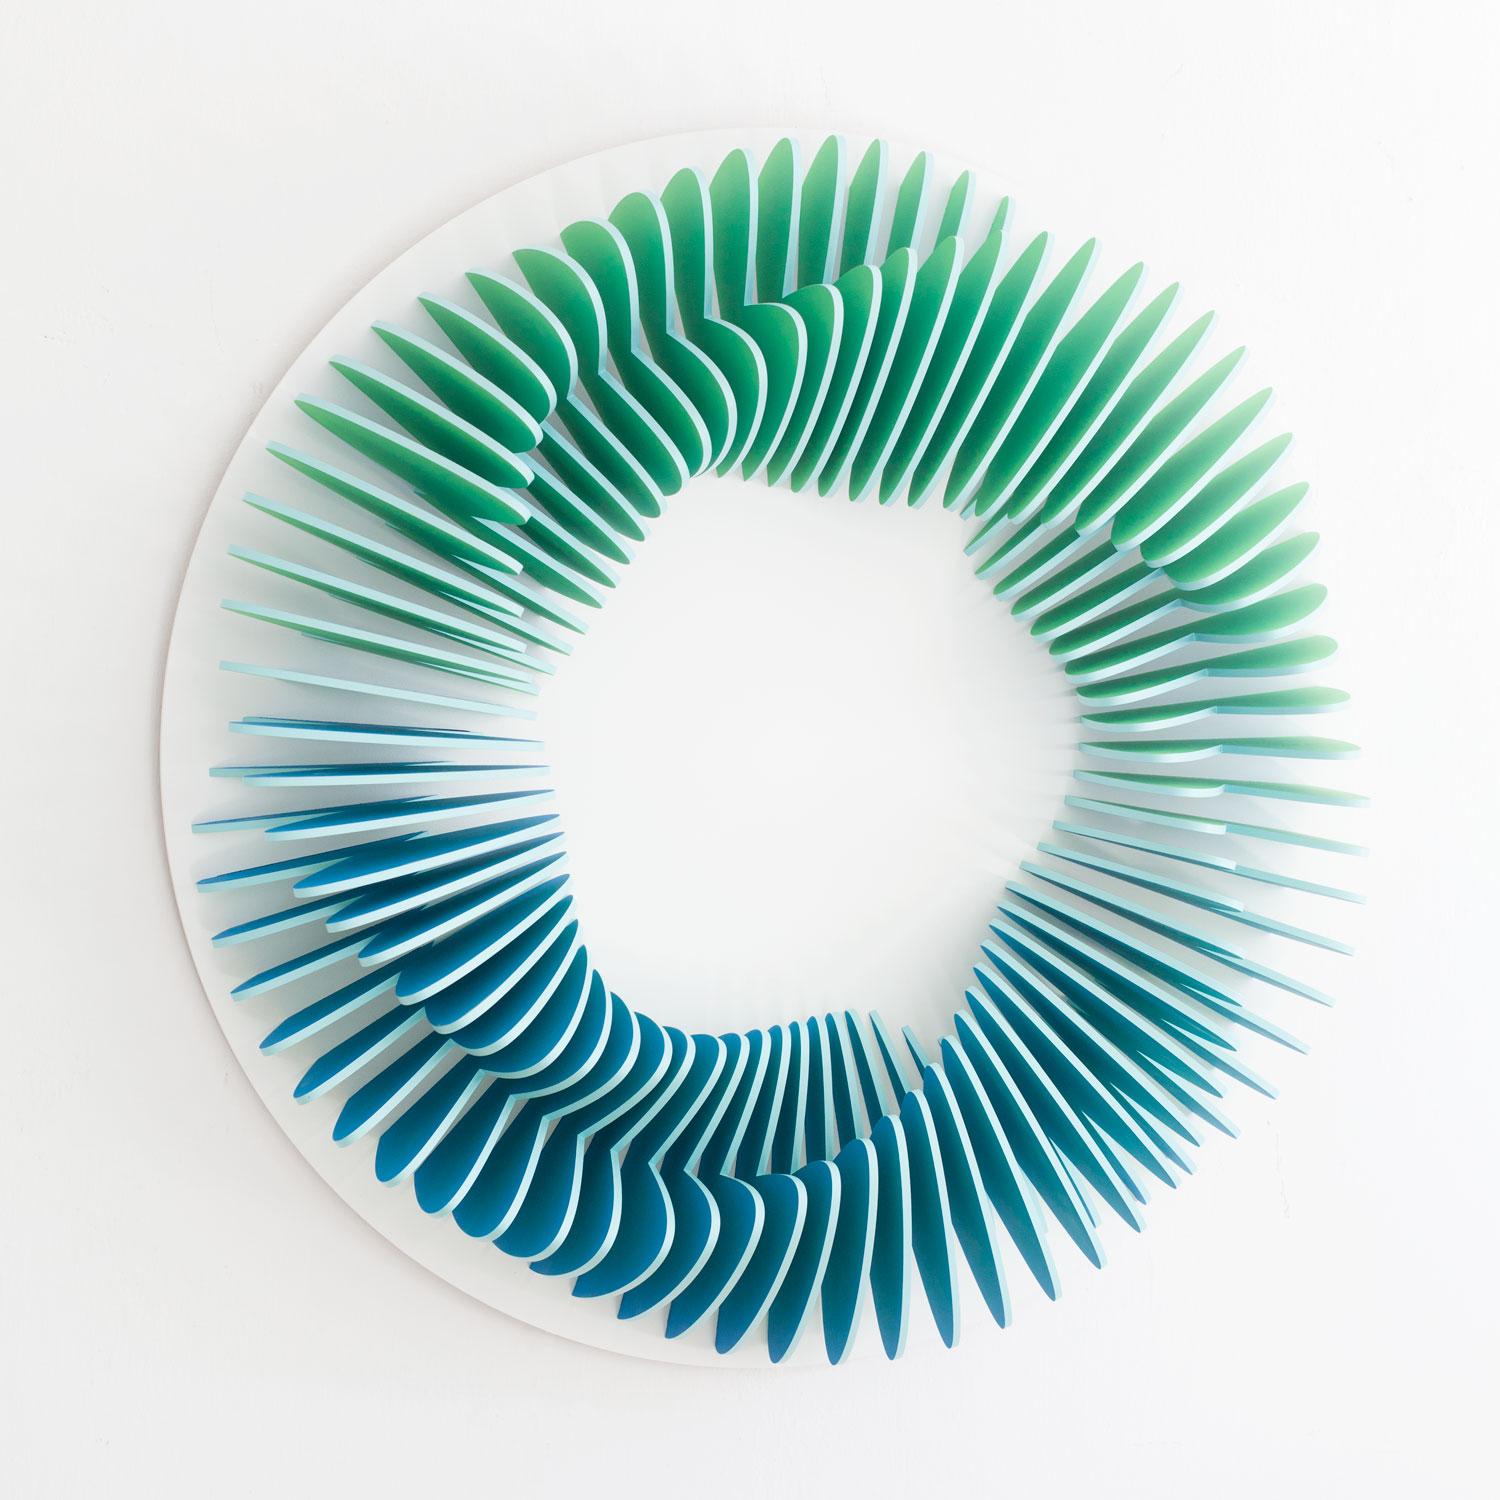 CC 102 - Blue green abstract geometric 3D wall circular sculpture - Sculpture by Anna Kruhelska